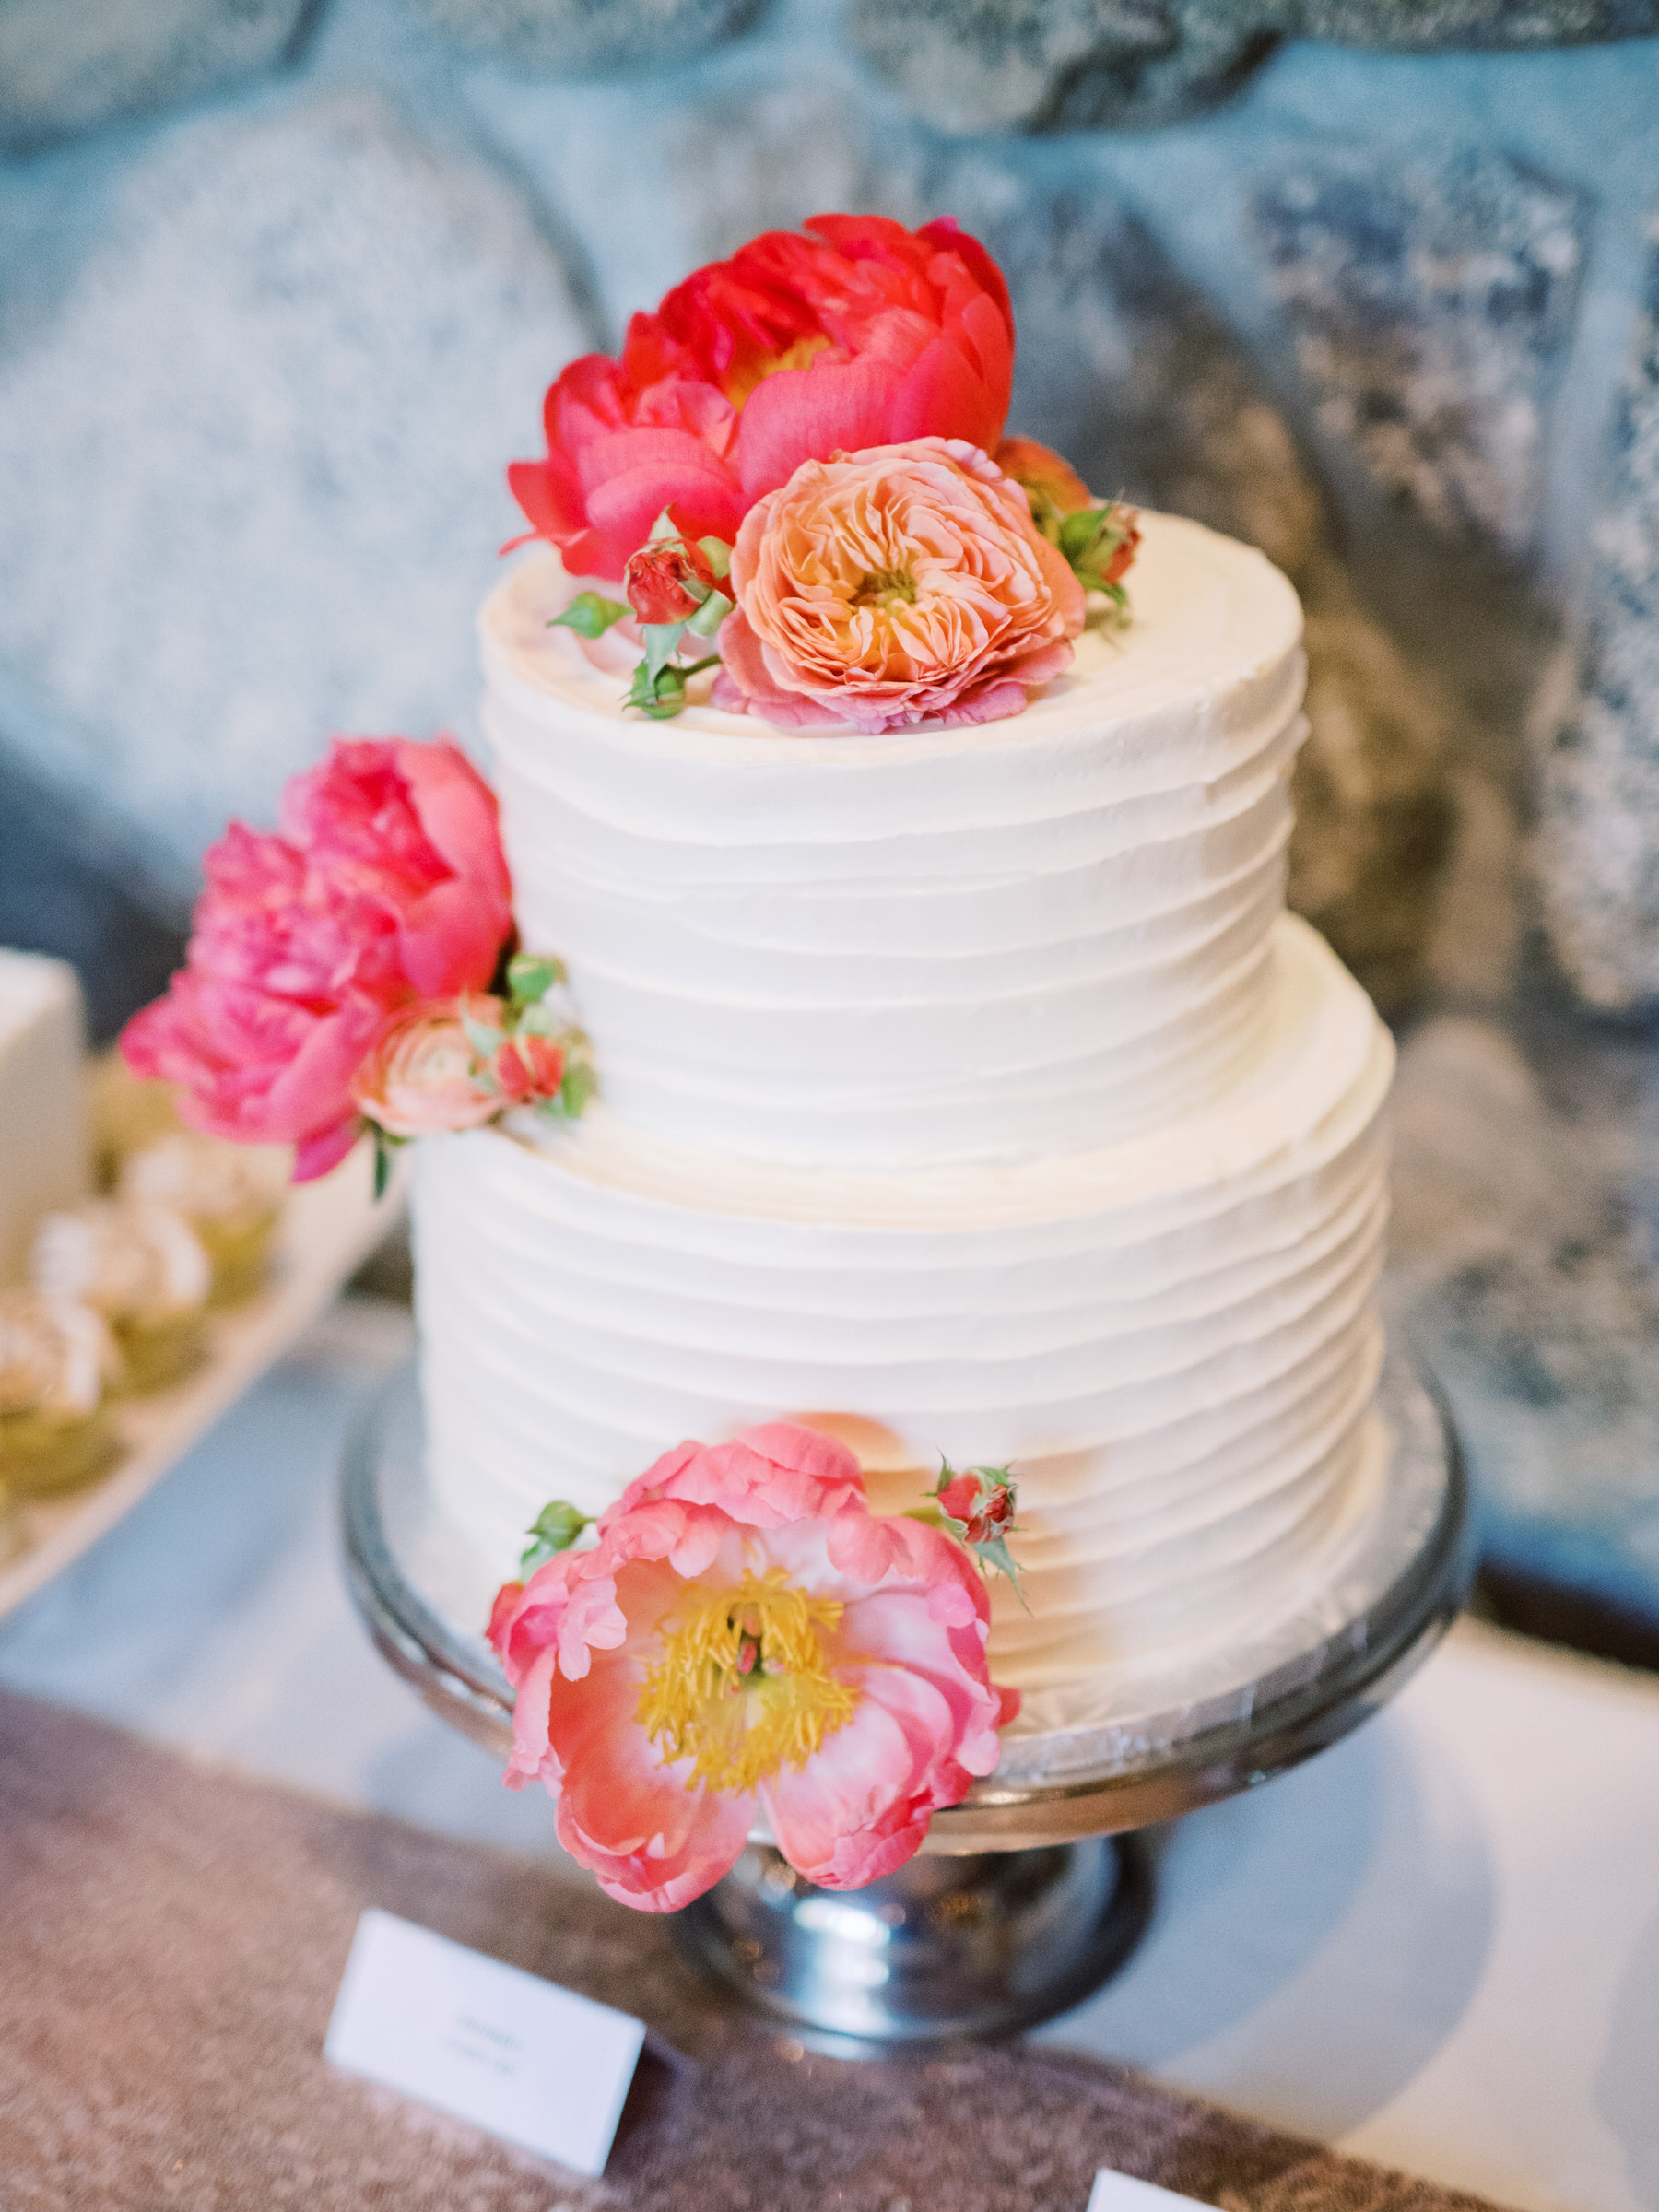 Sleeping Lady Resort weddings: The wedding cake